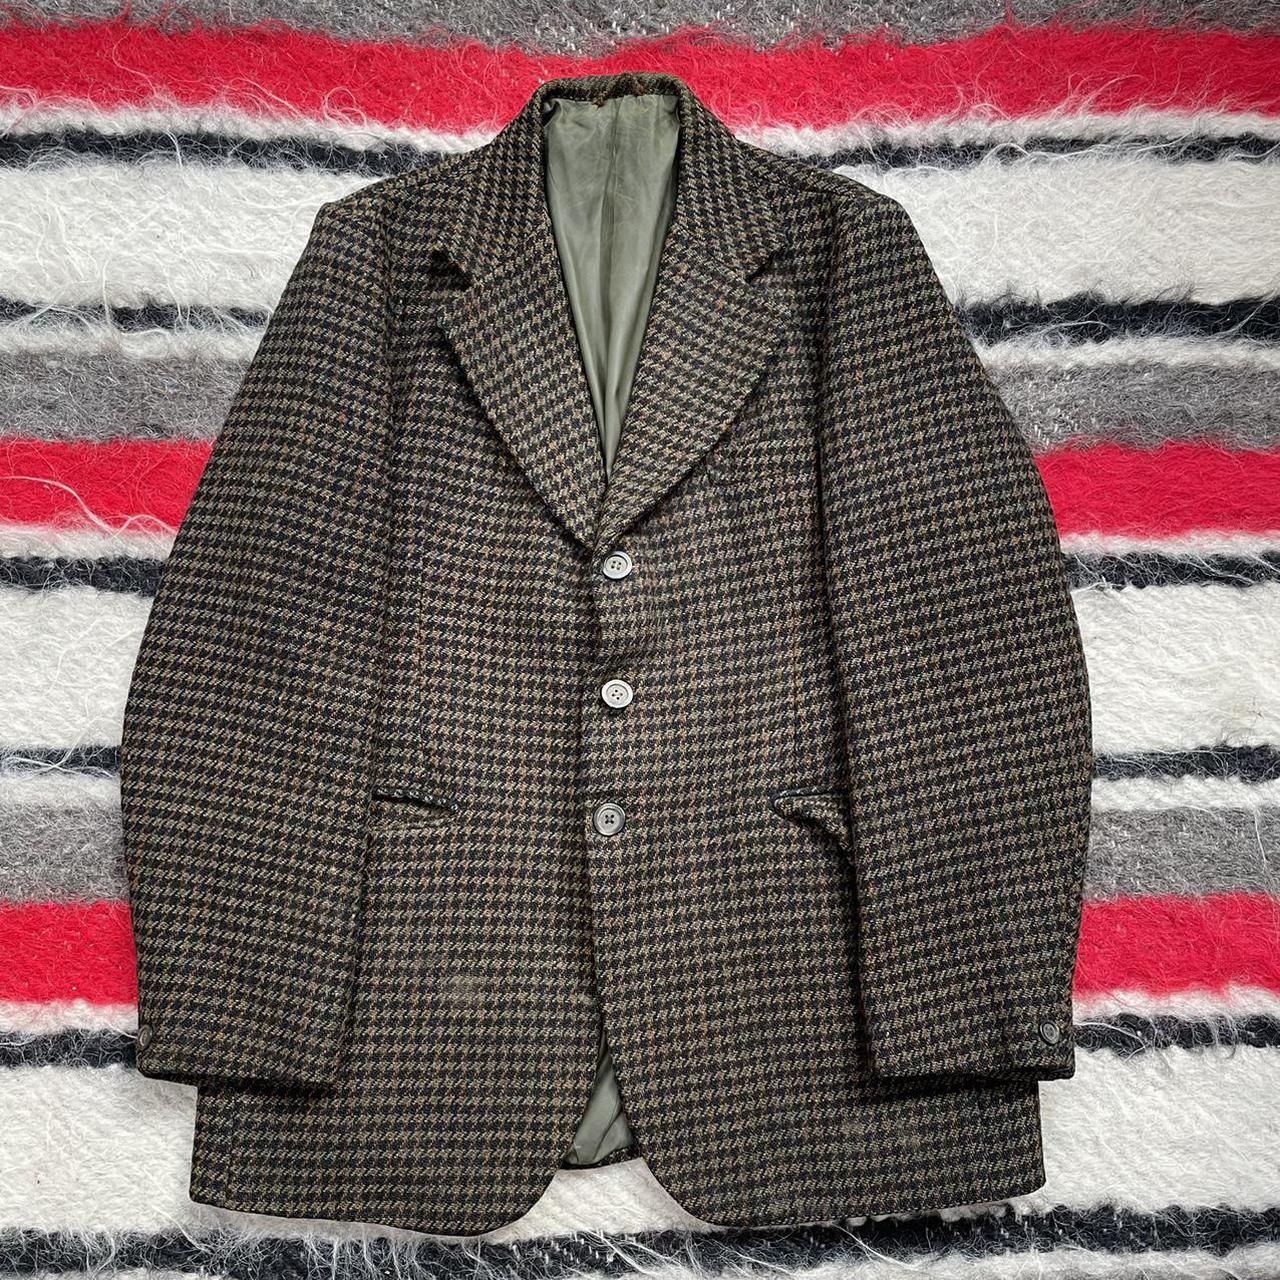 Vintage 1960s 1970s Green Tweed Button Up Blazer... - Depop